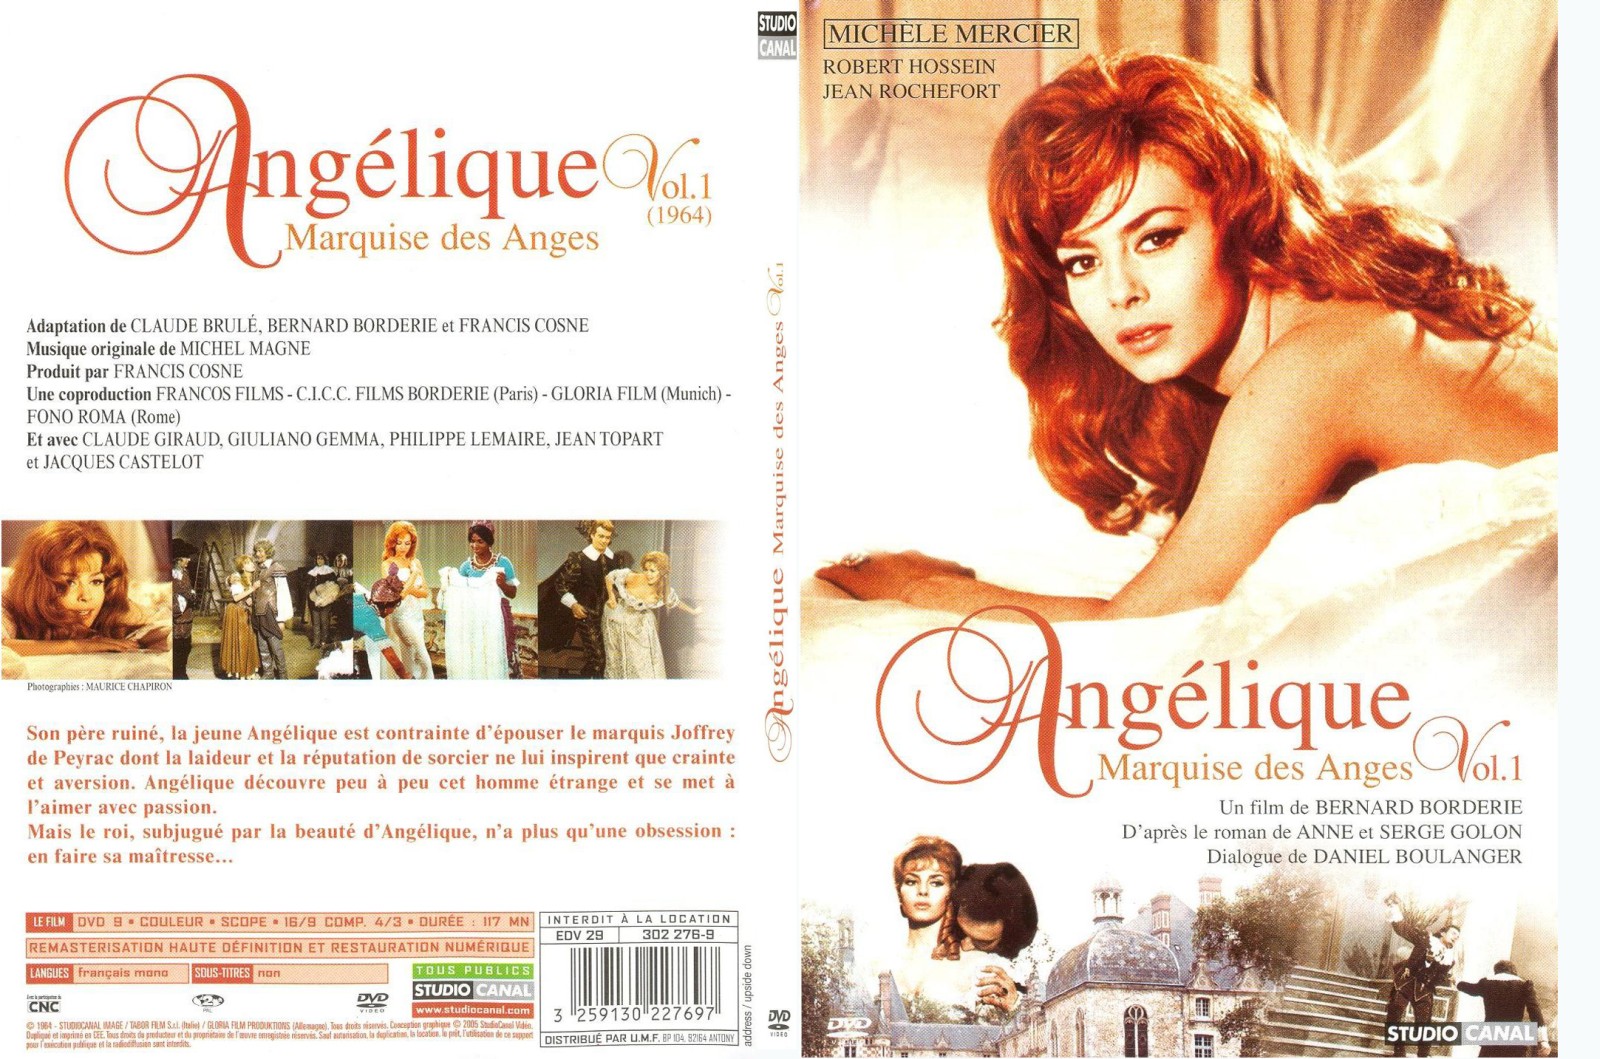 Jaquette DVD Angelique Marquise des anges - SLIM